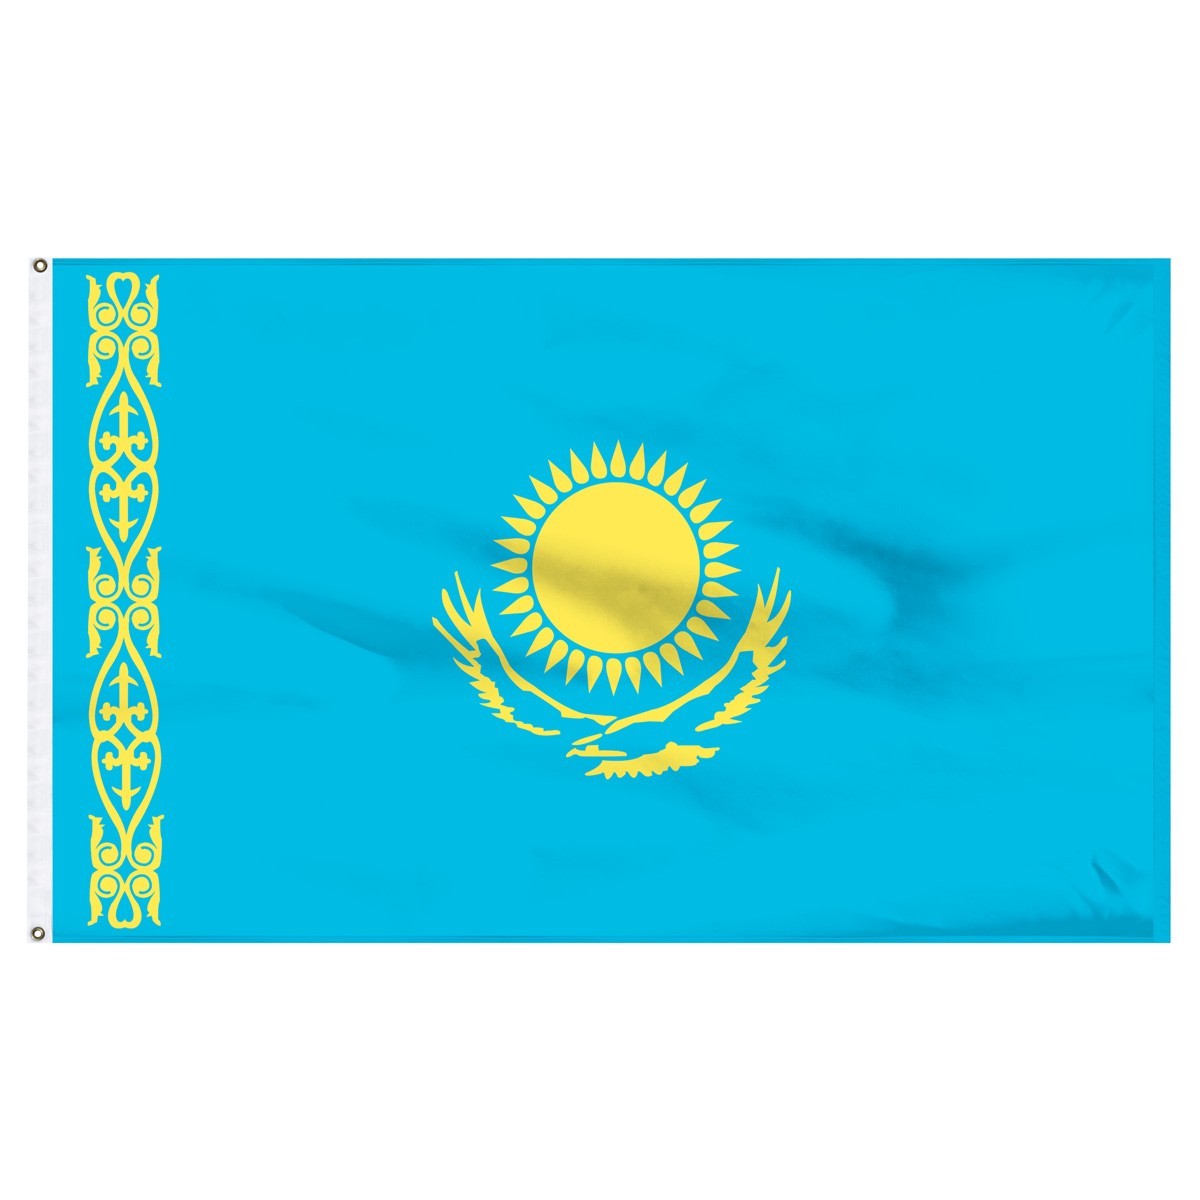 Kazakhstan 3ft x 5ft Outdoor Nylon Flag